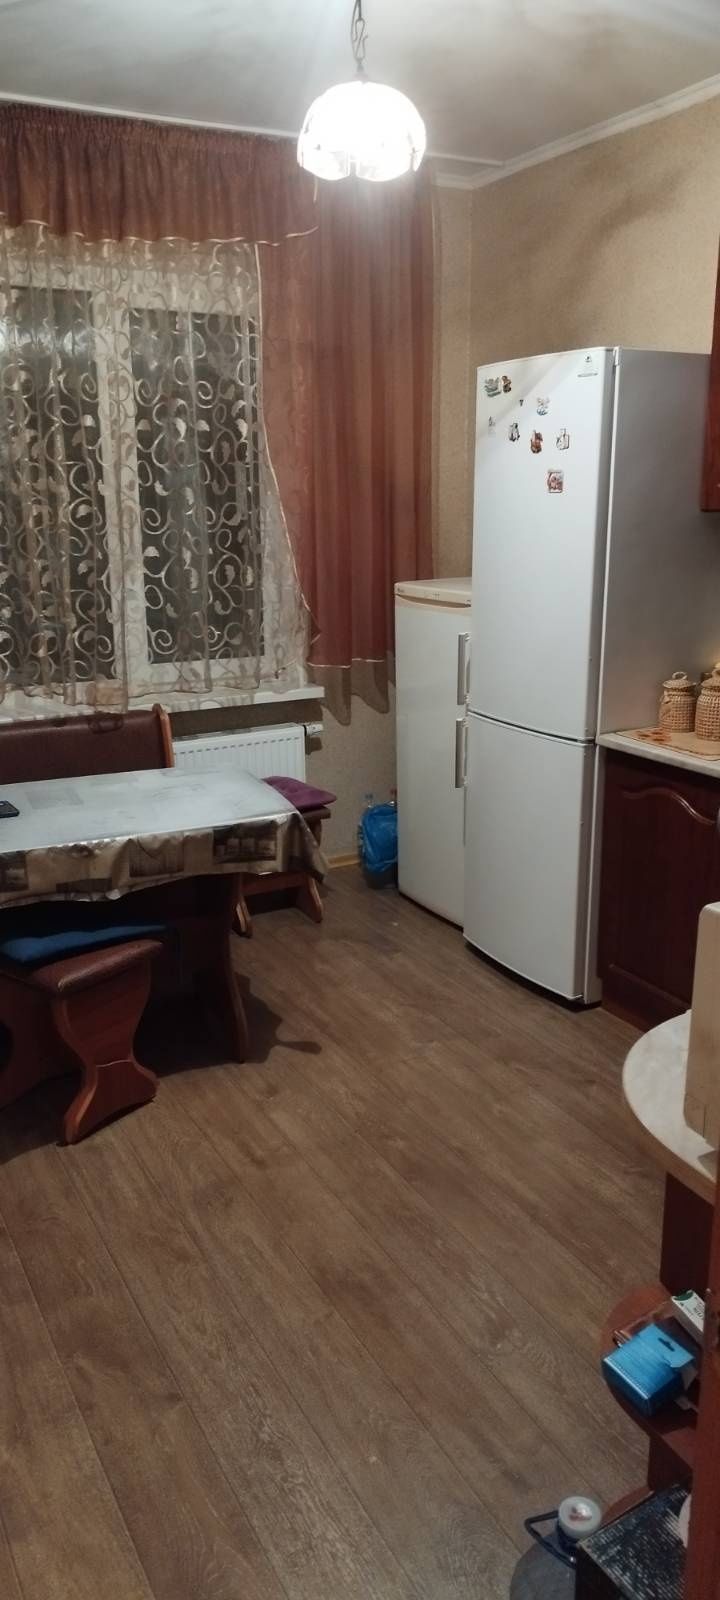 Продам двокімнатну квартиру в Києві ( Троєщина) новий дім.